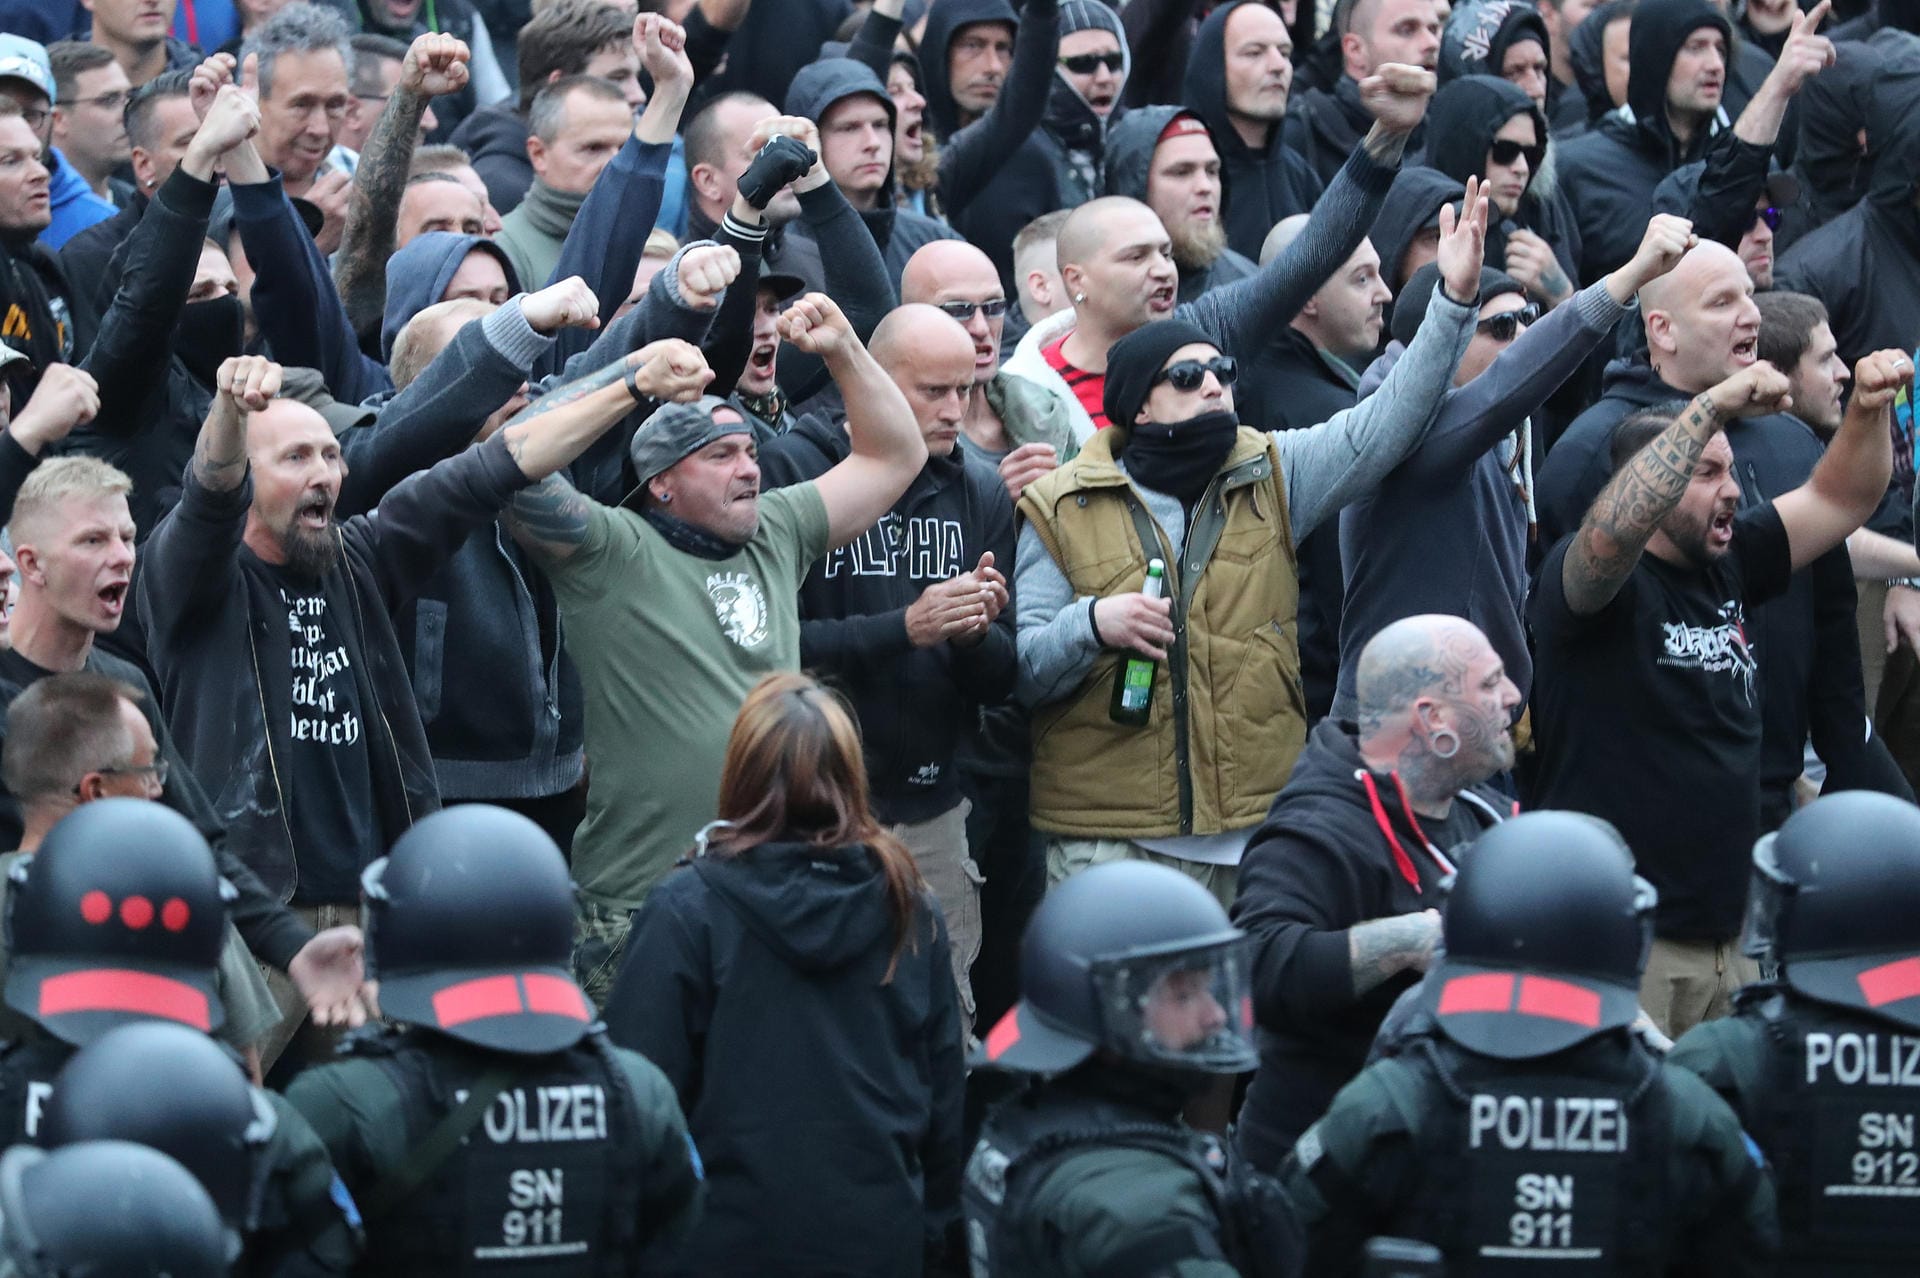 An den Demonstrationen am Montagabend nahmen mehrere Tausend Menschen teil. Die Polizei versuchte mit einem Großaufgebot die von Rechten dominierte Protestveranstaltung und eine vom Bündnis "Chemnitz nazifrei" organisierte Veranstaltung zu trennen.